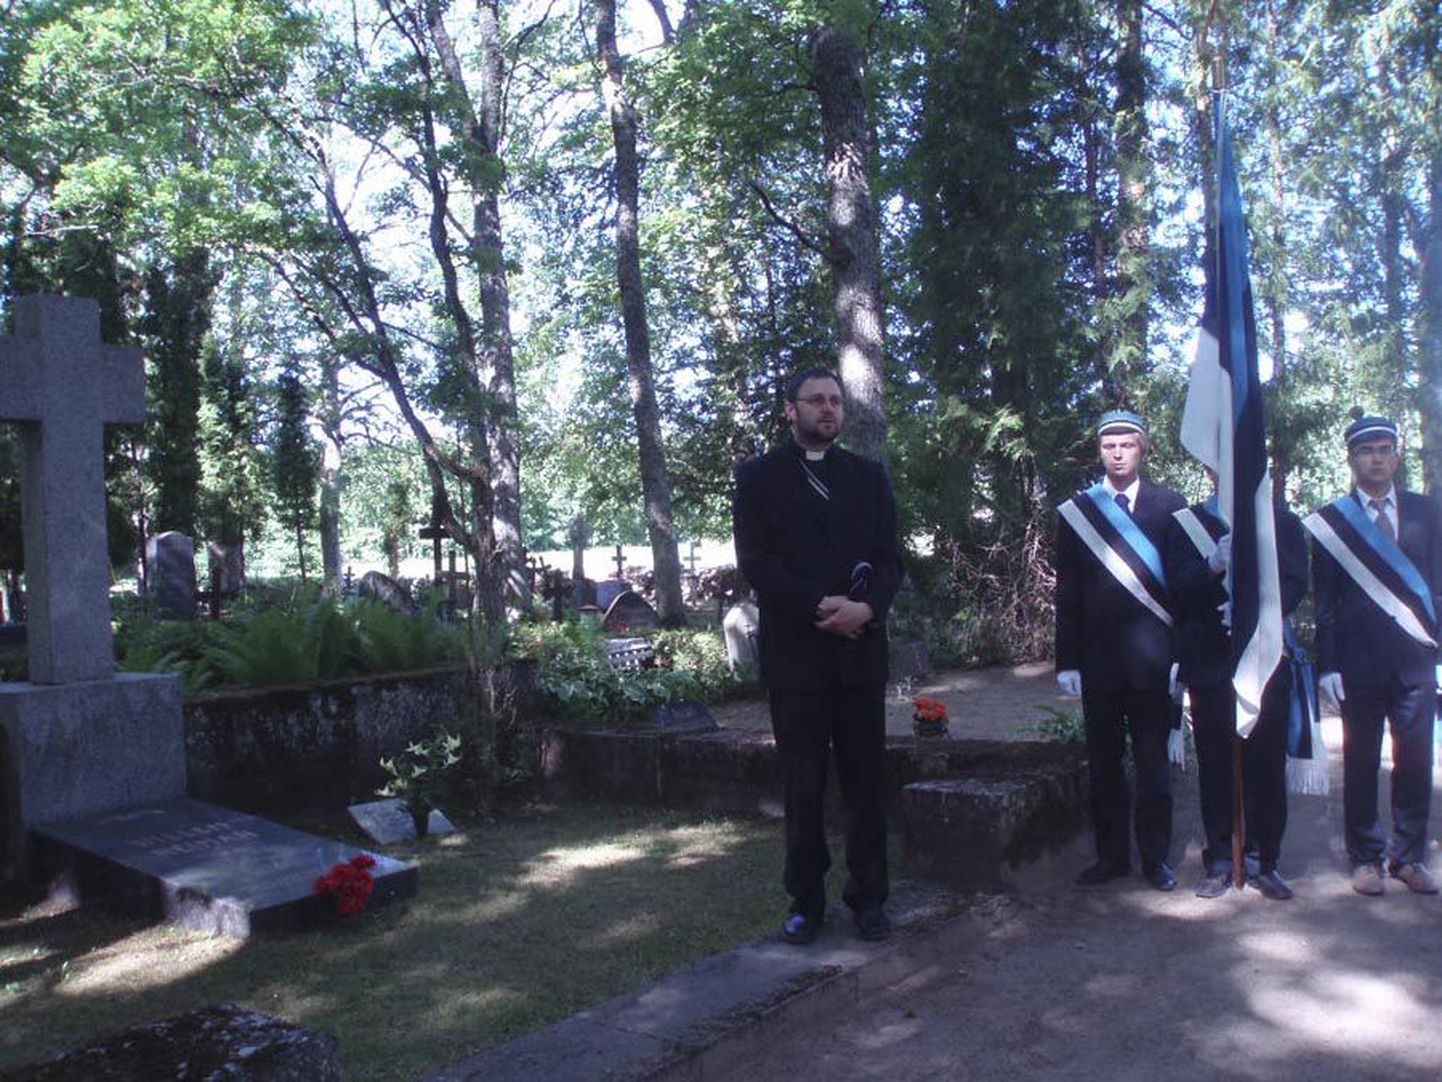 Kalmistul ütles avasõnad ja pidas palvuse Villem Reimani kolleegiumi esimees, Tartu Peetri koguduse õpetaja Ants Tooming.